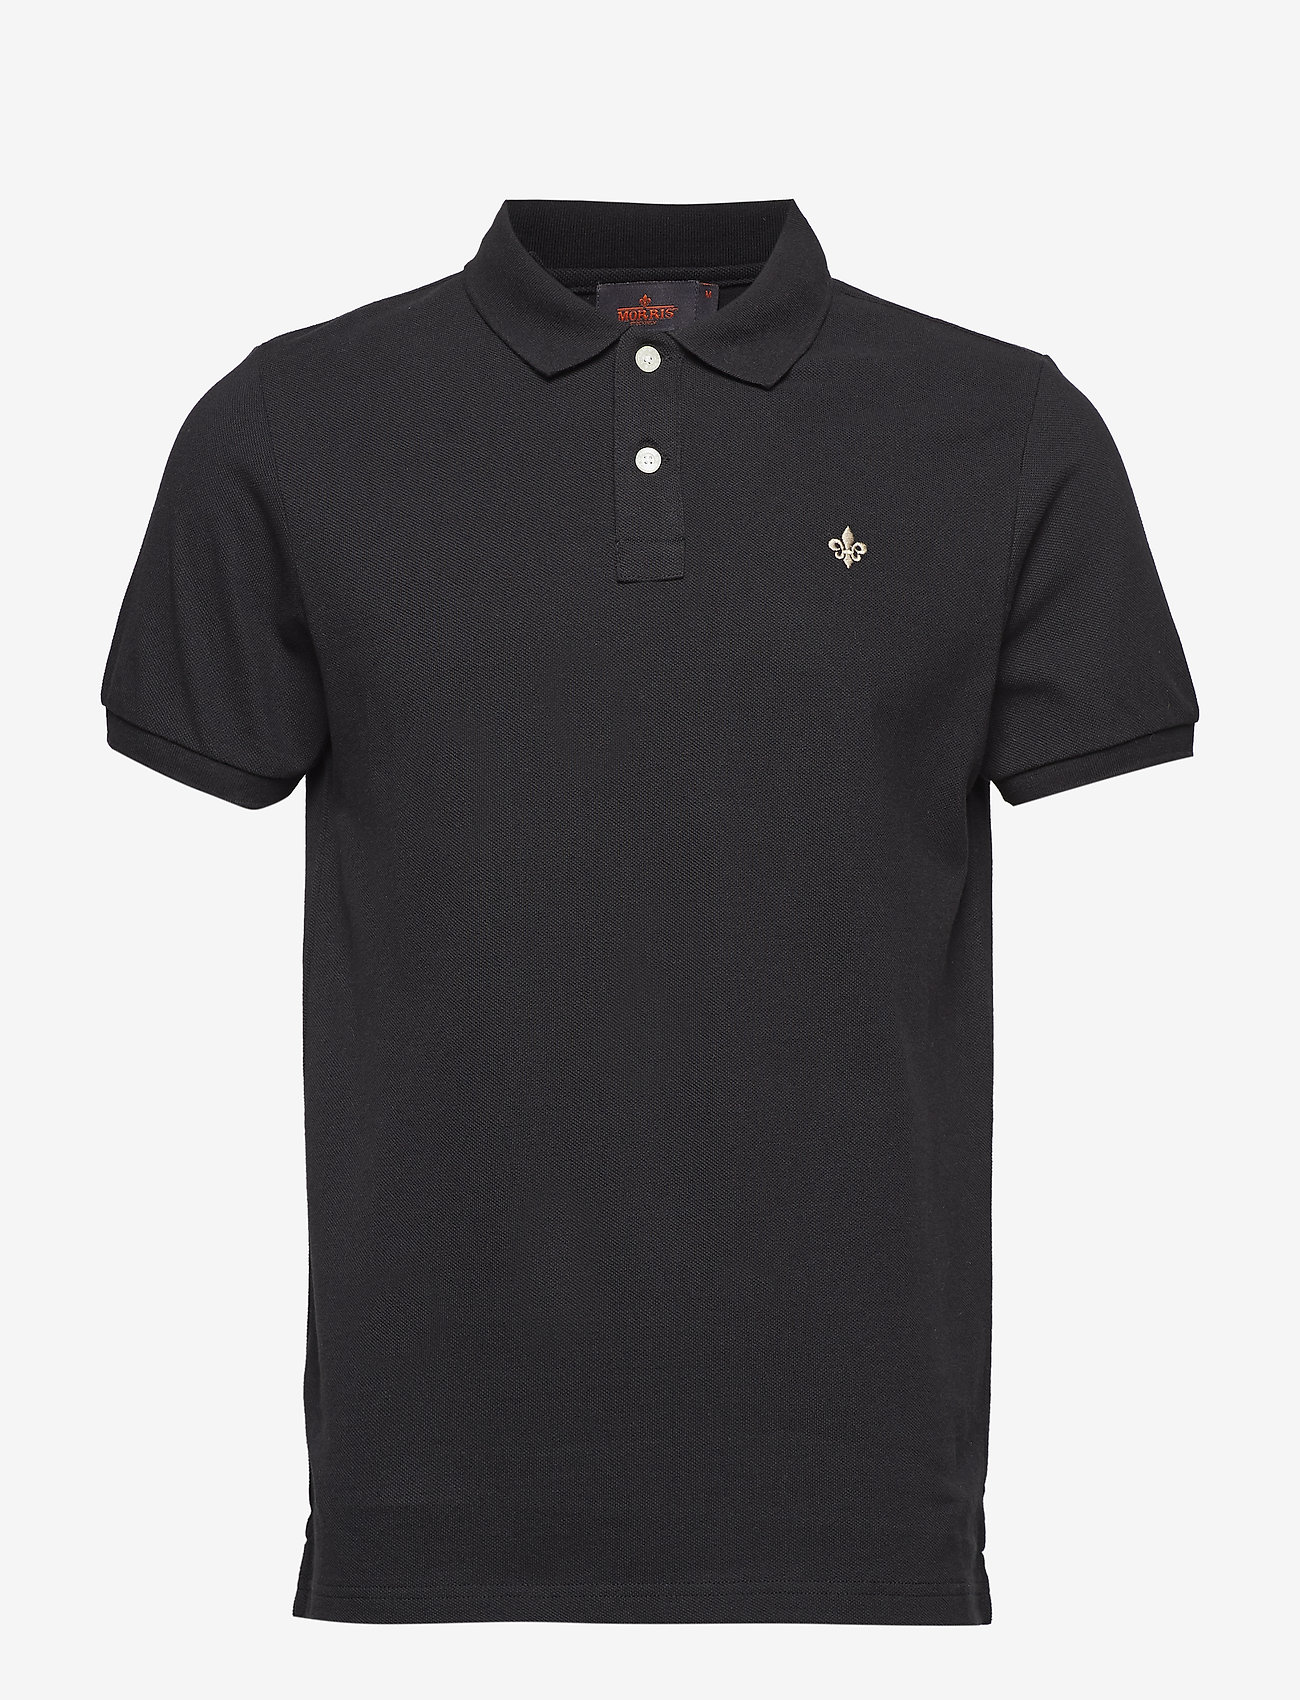 Morris - New Piqué - basic shirts - black - 0